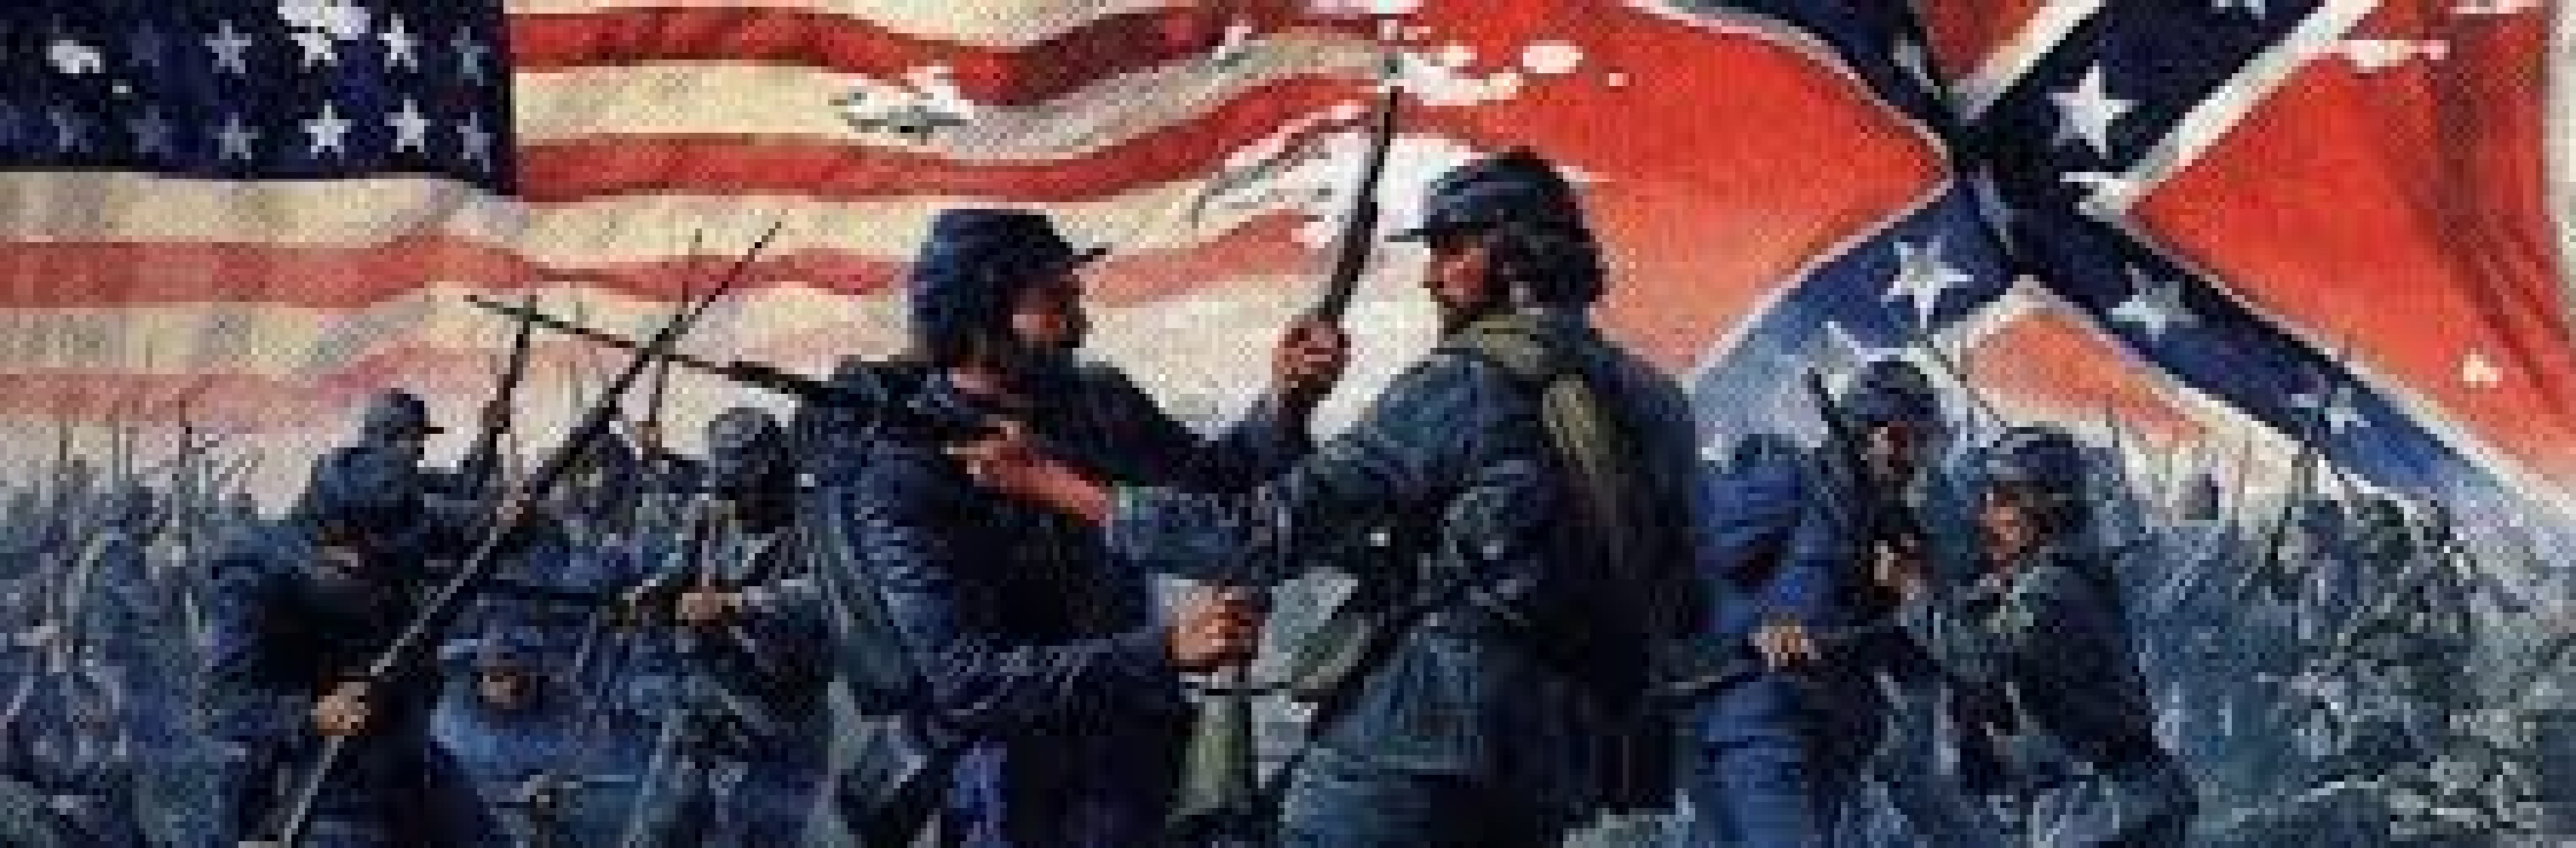 American Civil War wallpapers, Military, HQ American Civil War pictures